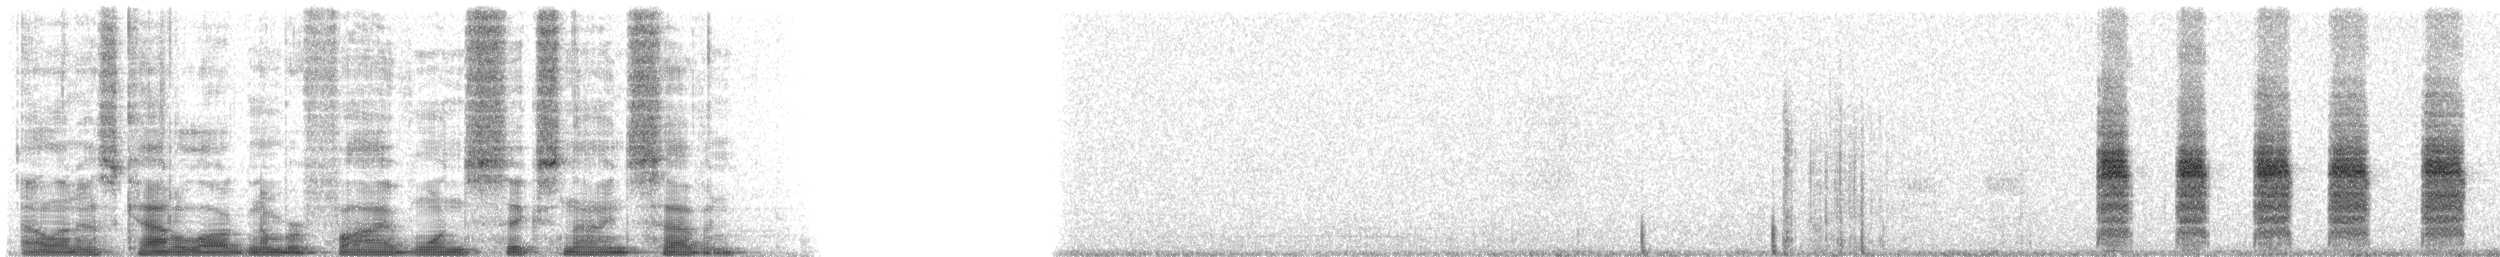 oseanstormsvale (oceanicus/exasperatus) - ML51697